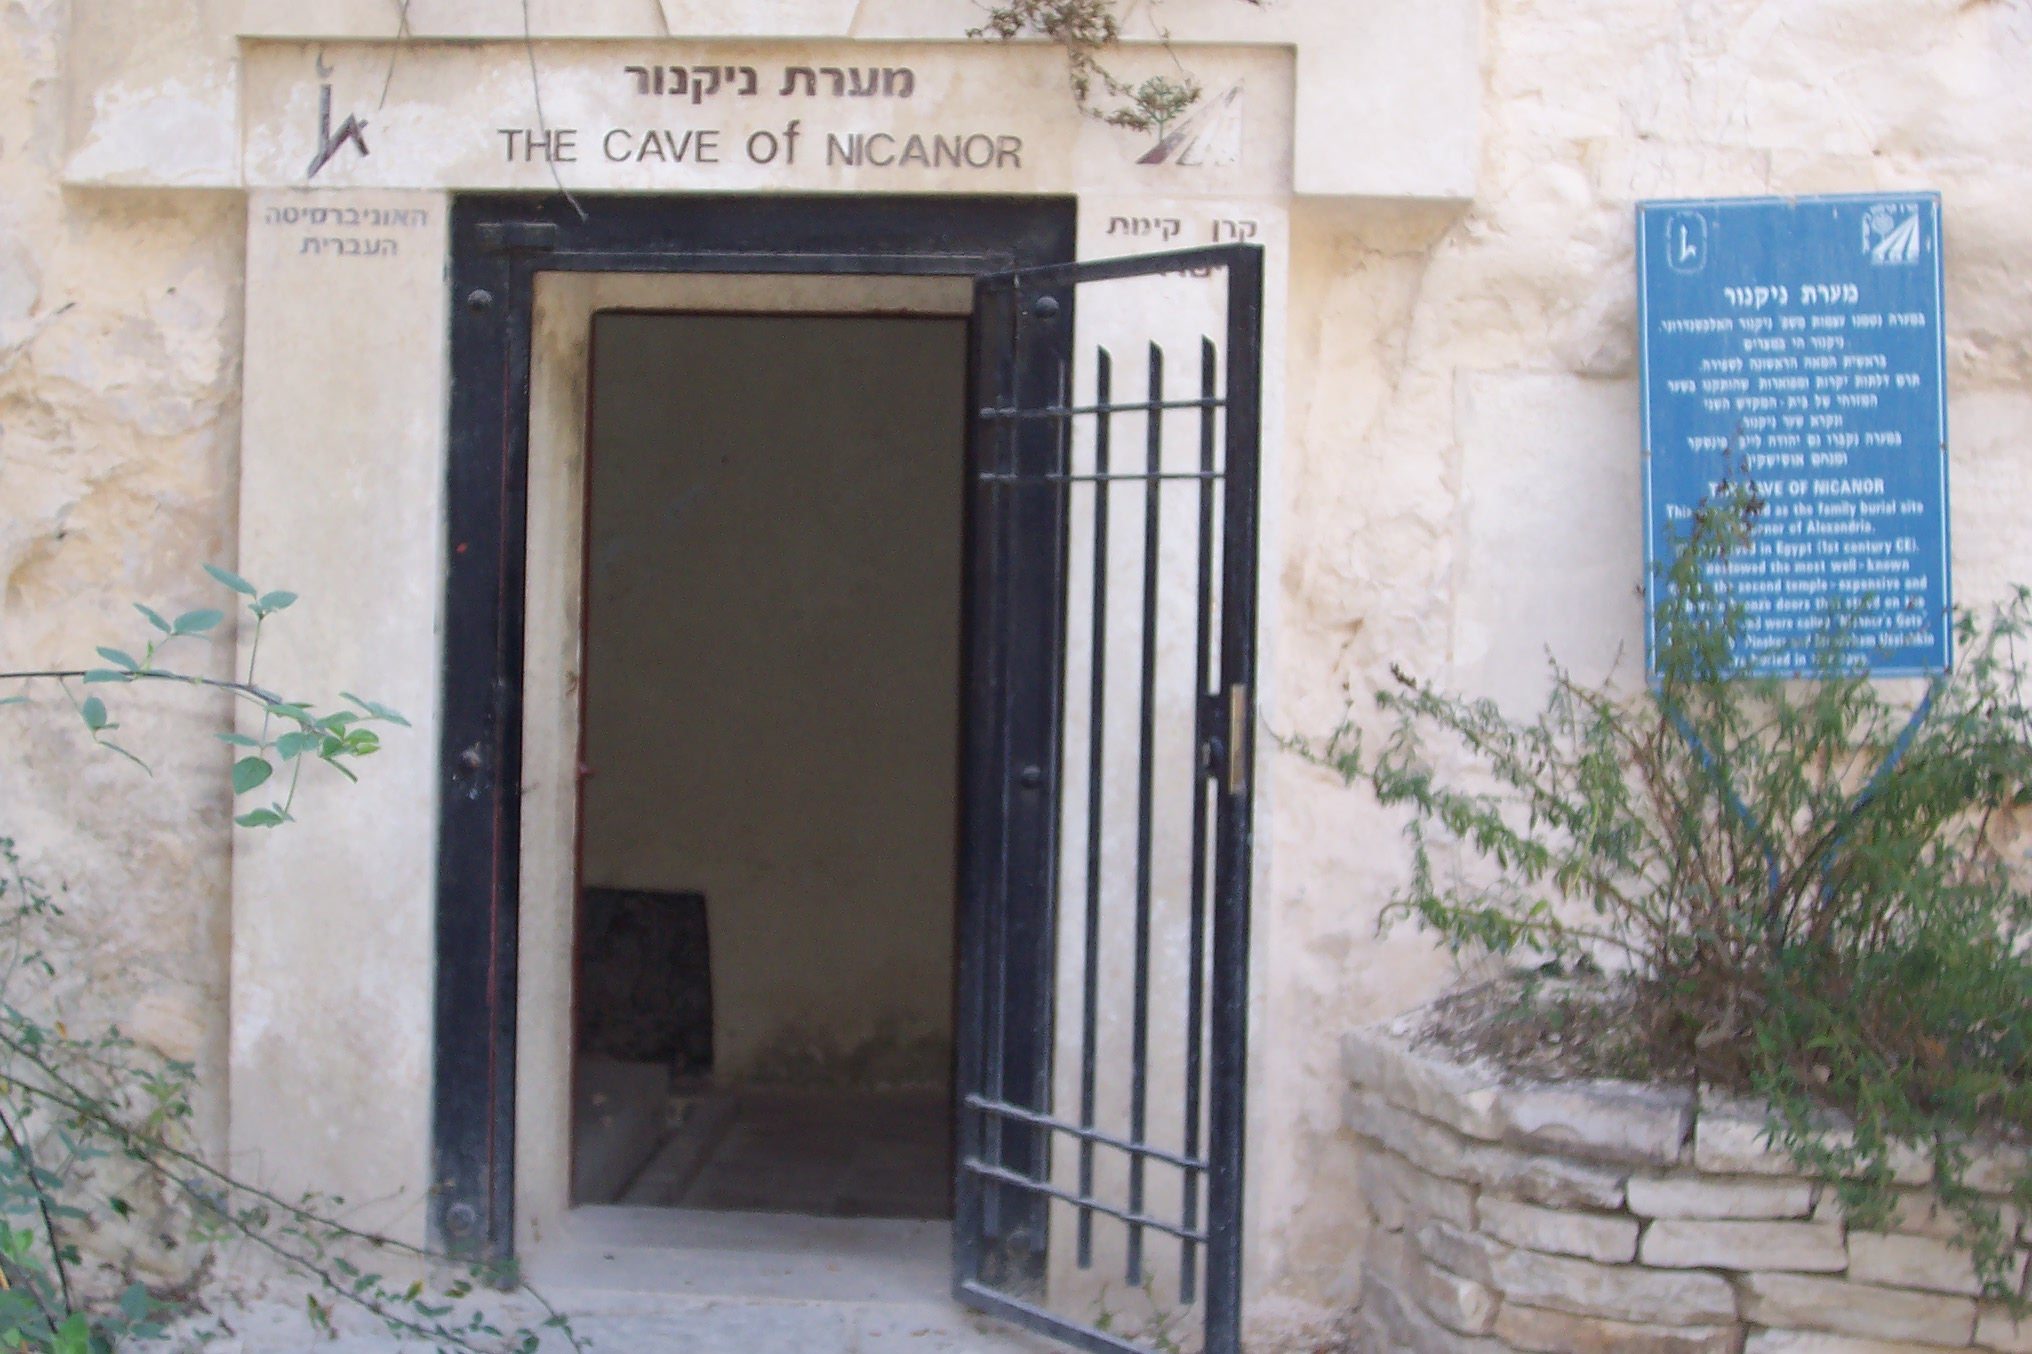 קבר ניקנור מערת קבורה יהודית, קמפוס הר הצופים של האוניברסיטה העברית בירושלים (צילום: ד"ר ענת אביטל)